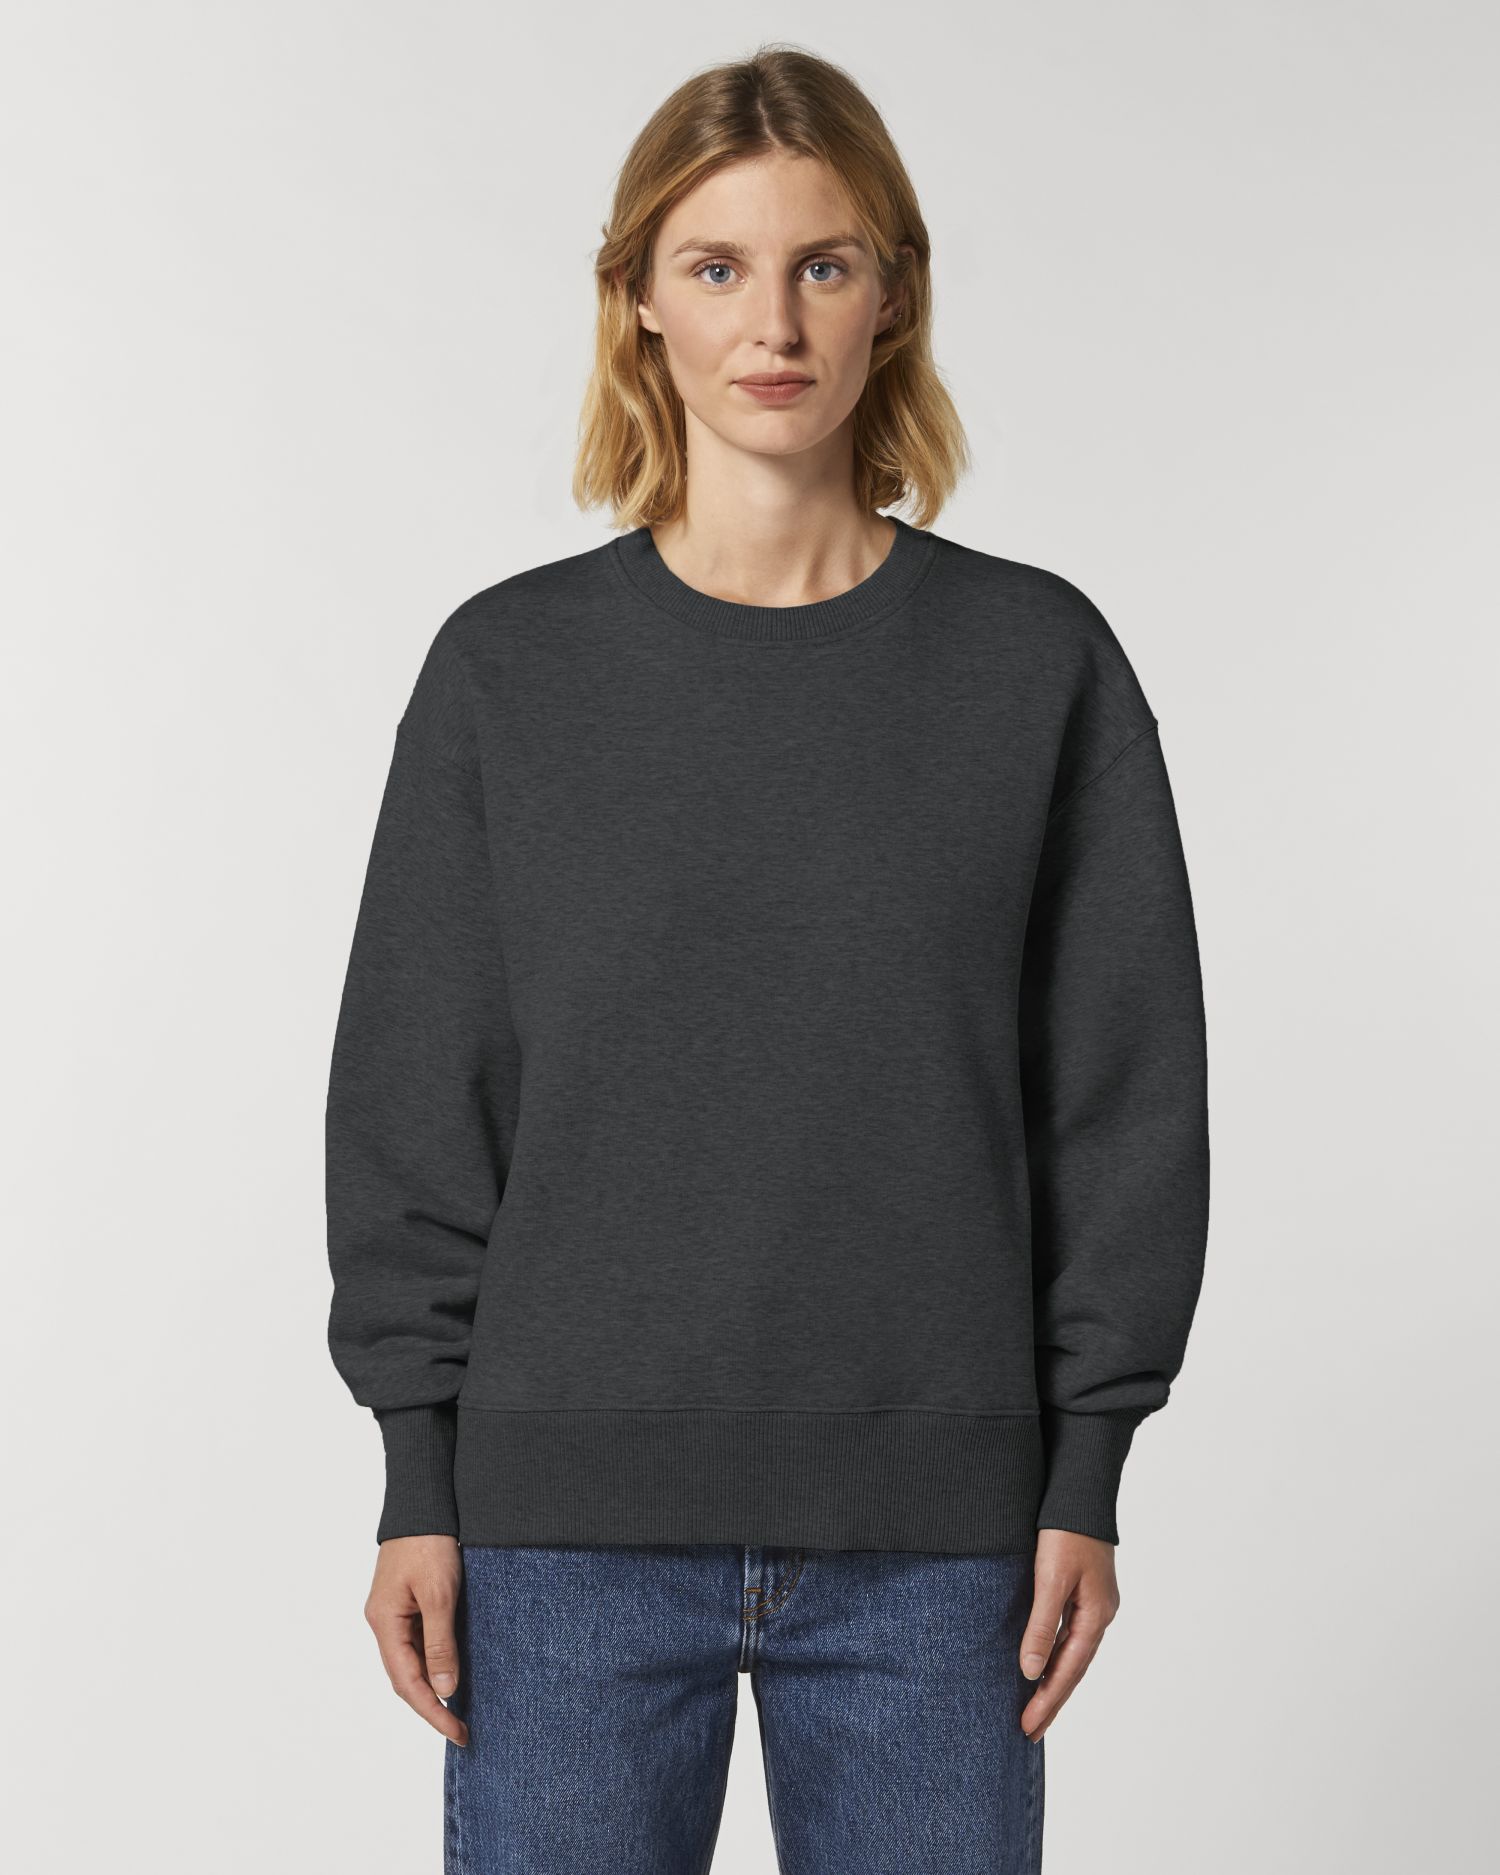 Crew neck sweatshirts Radder in Farbe Dark Heather Grey